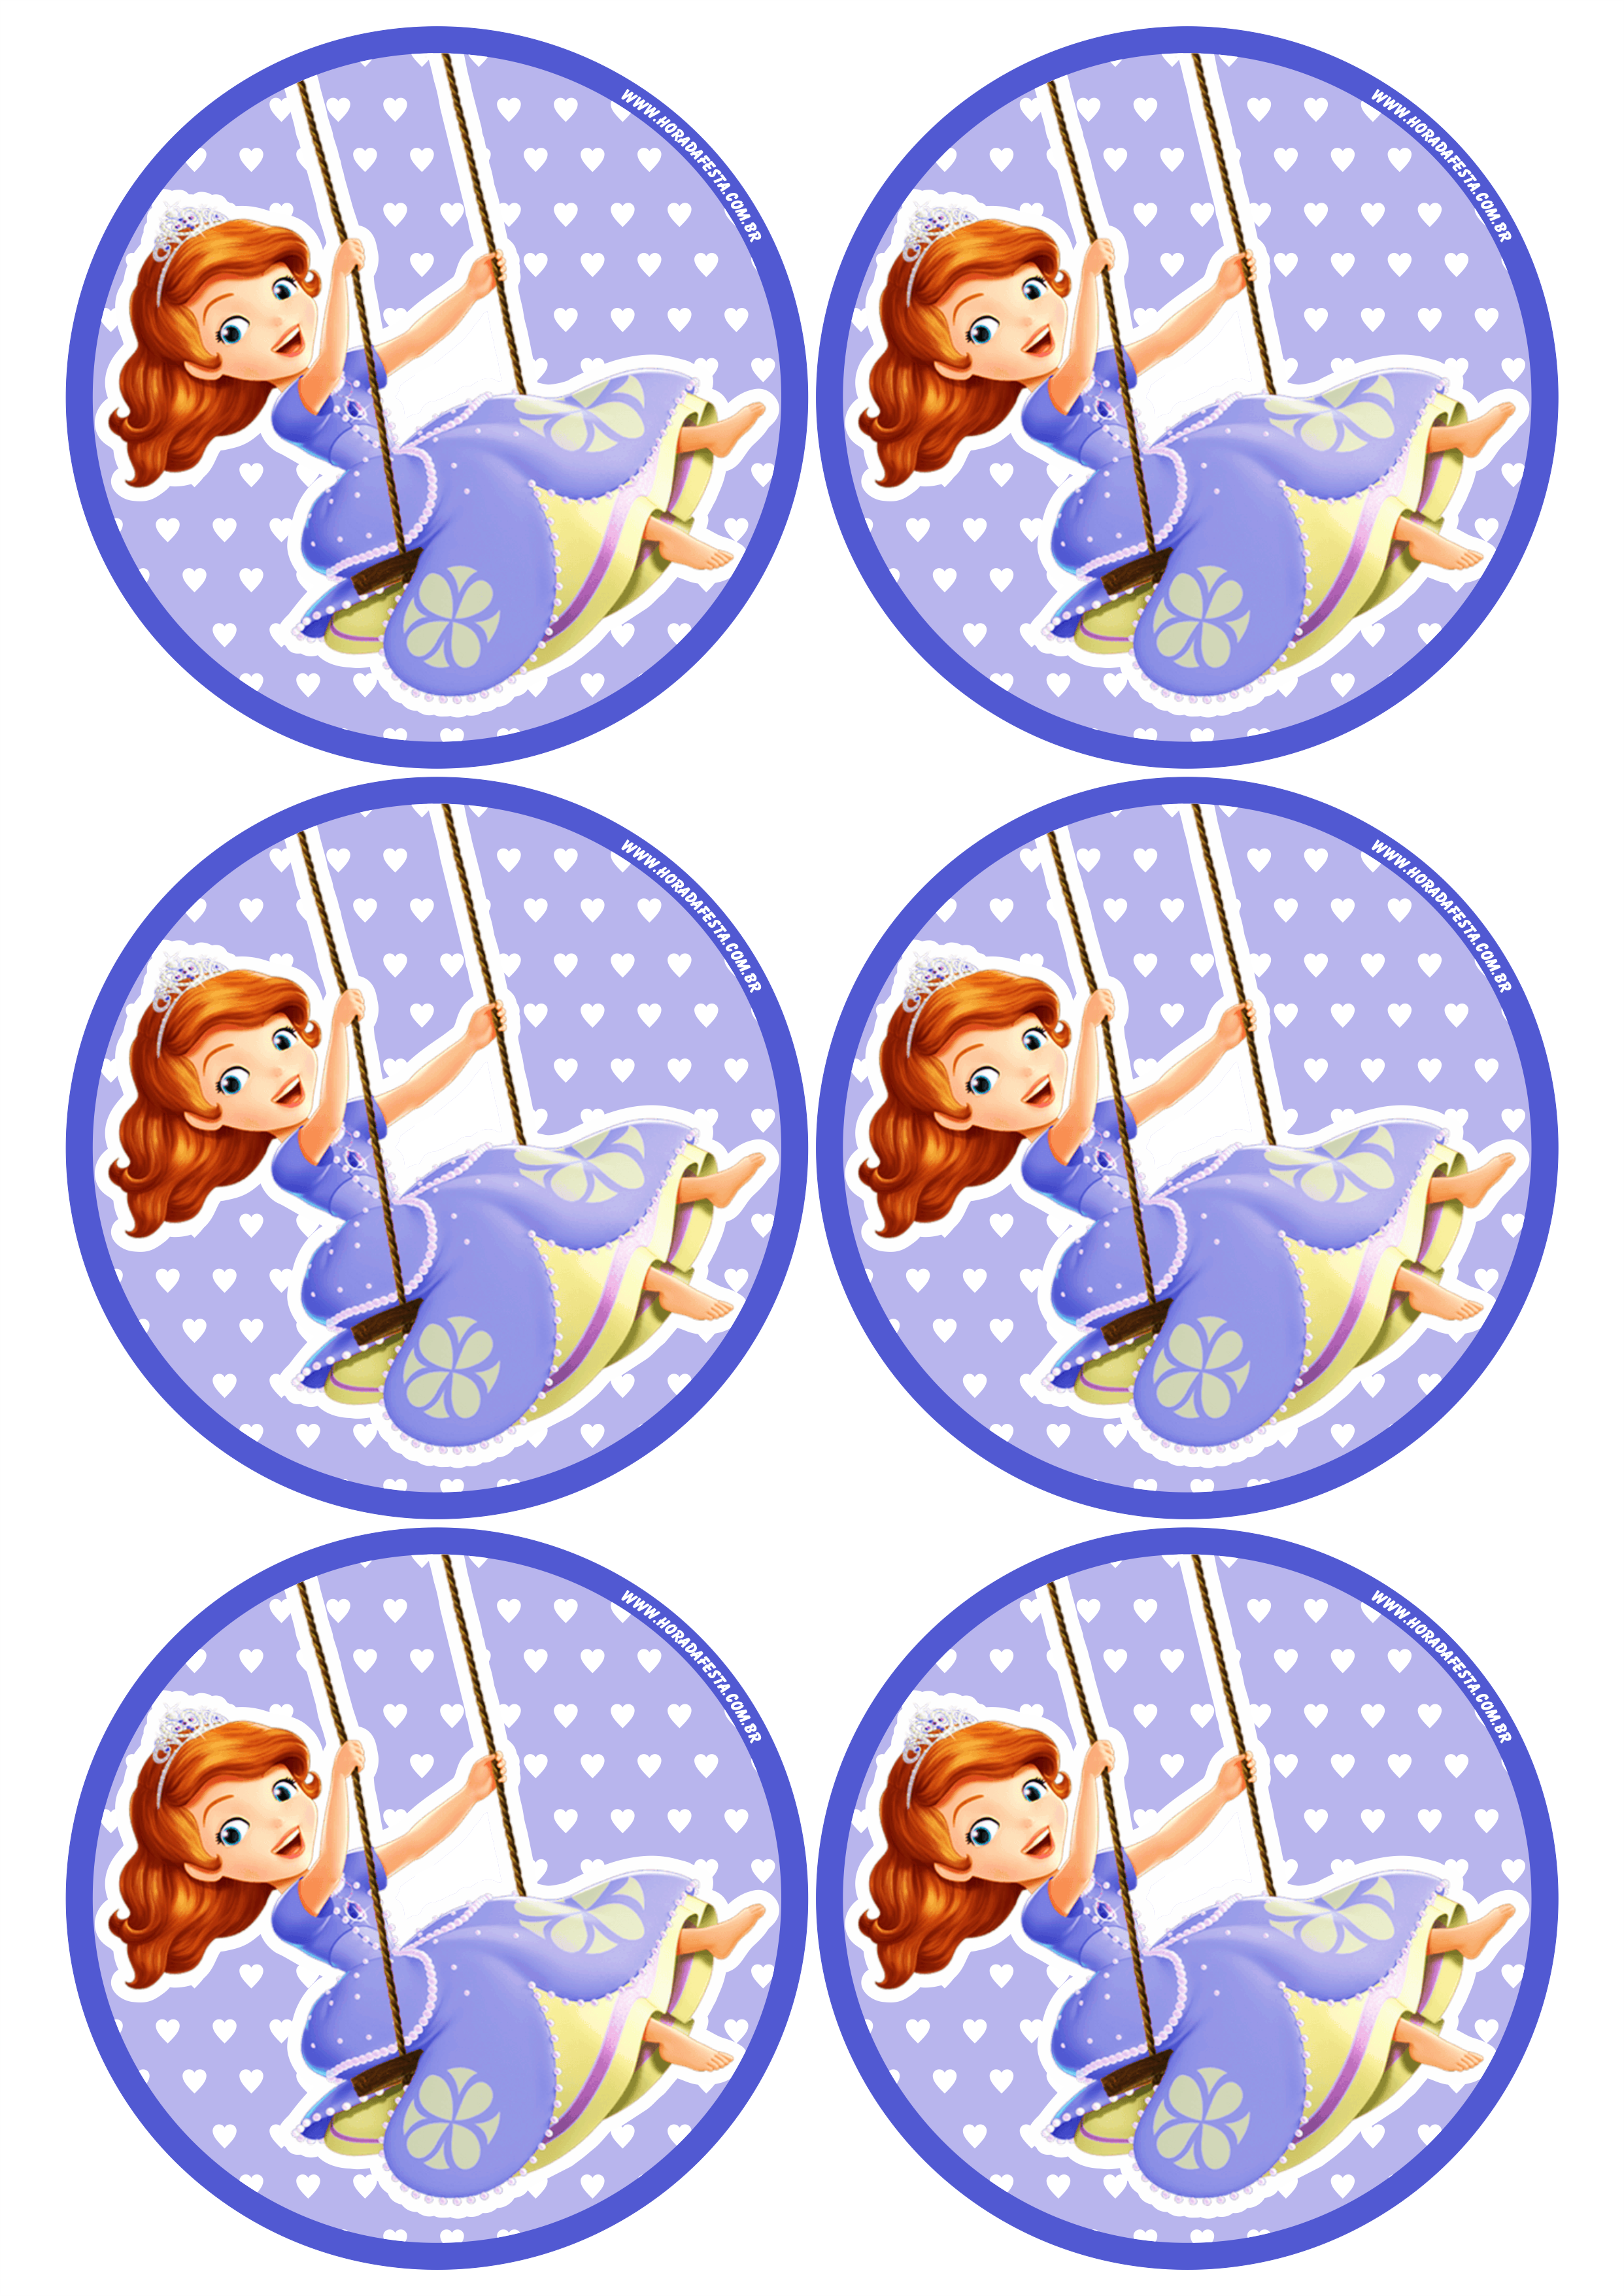 Princesa Sofia adesivo redondo tag sticker painel festa de aniversário infantil menina artigos de papelaria 6 imagens png